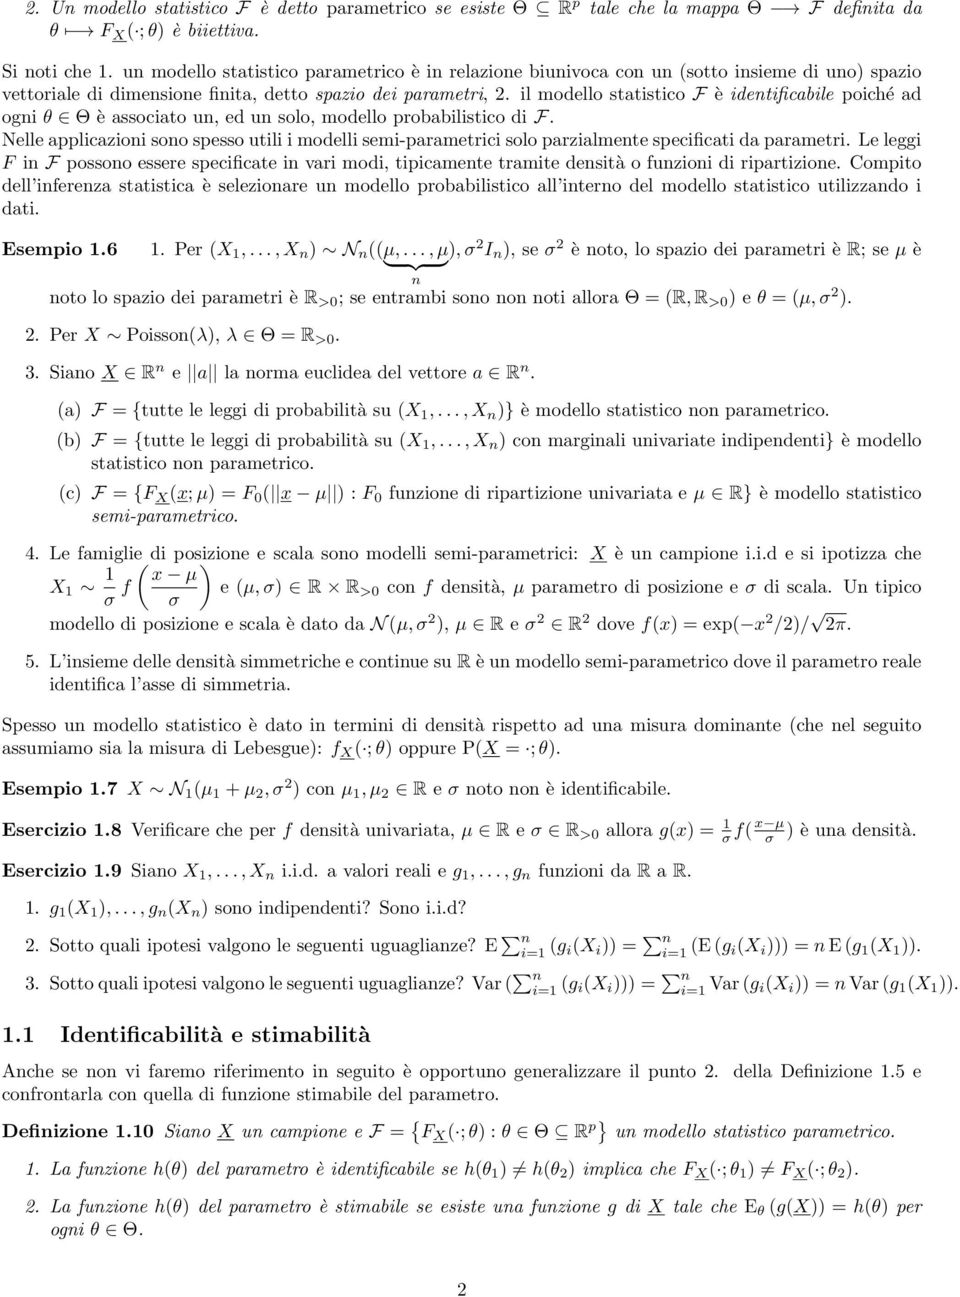 il modello statistico F è idetificabile poiché ad ogi θ Θ è associato u, ed u solo, modello probabilistico di F.